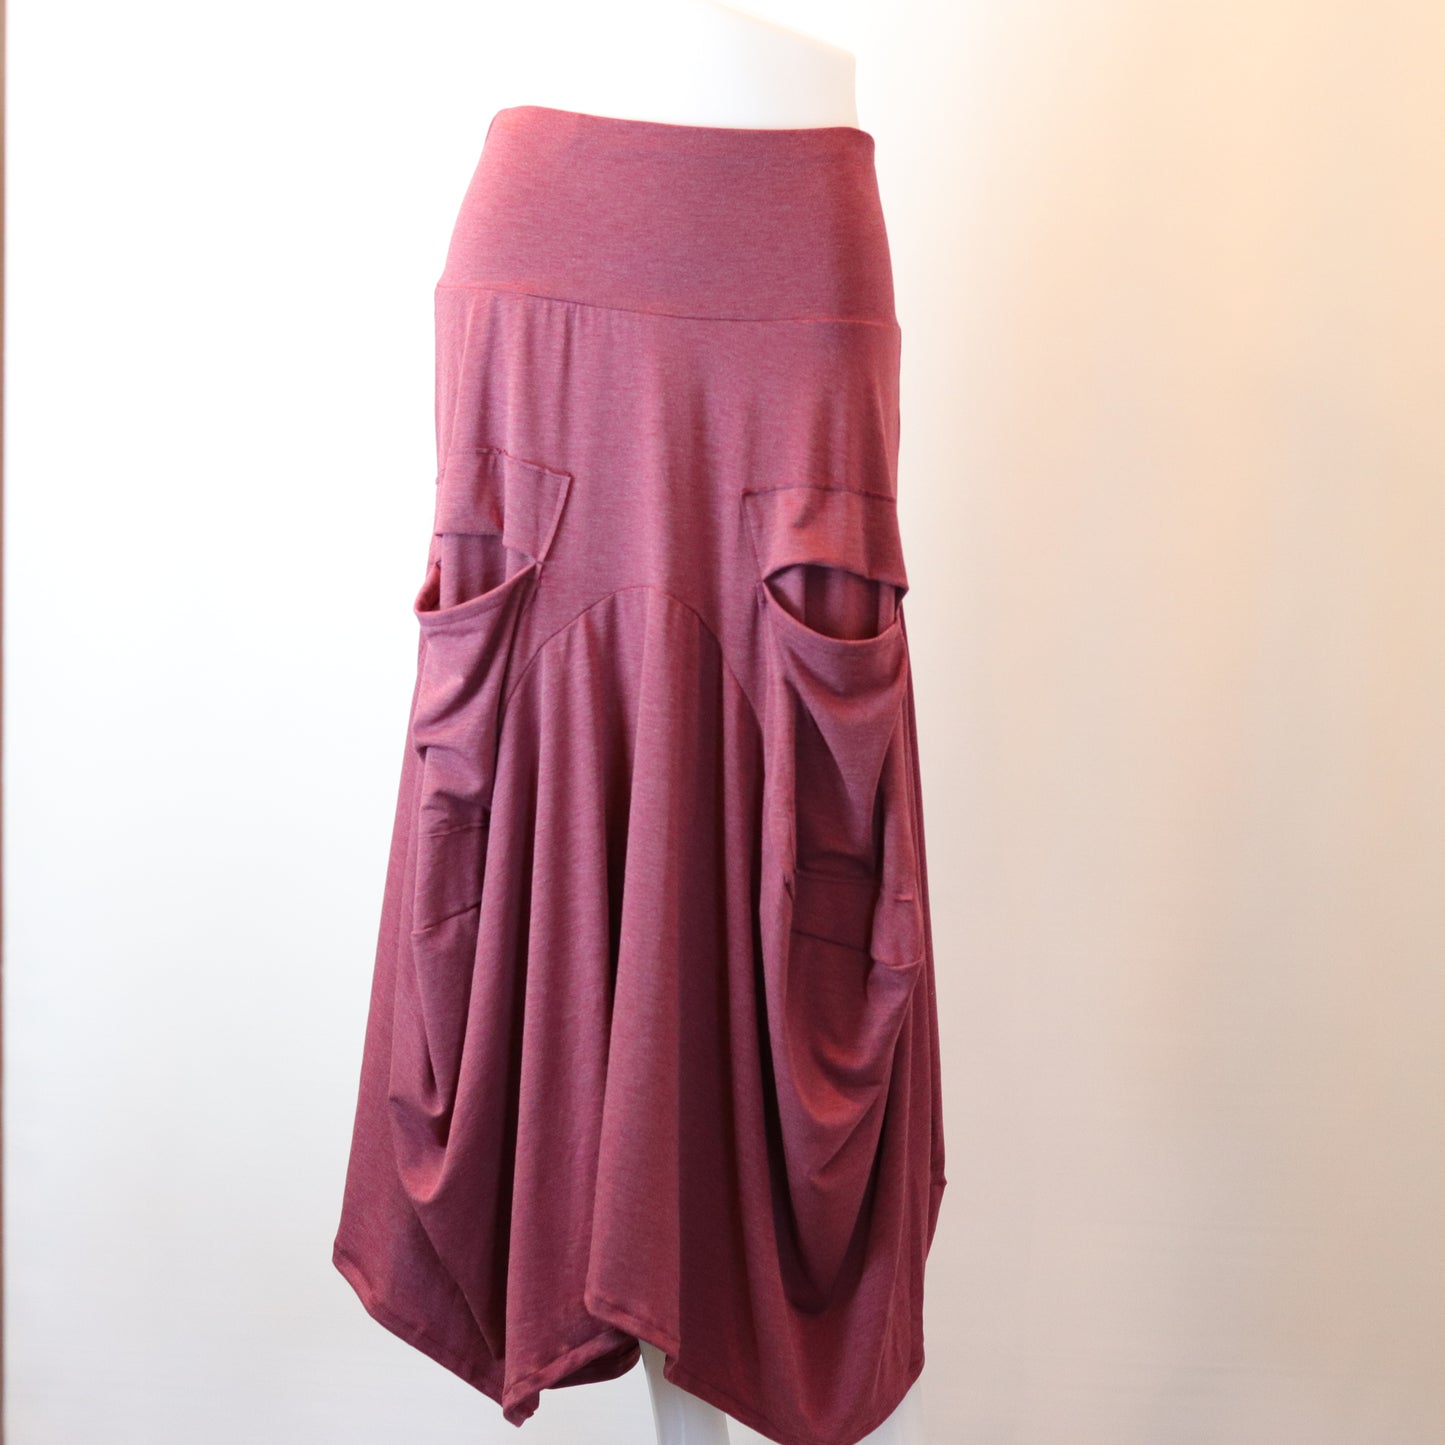 Molly Pocket Skirt